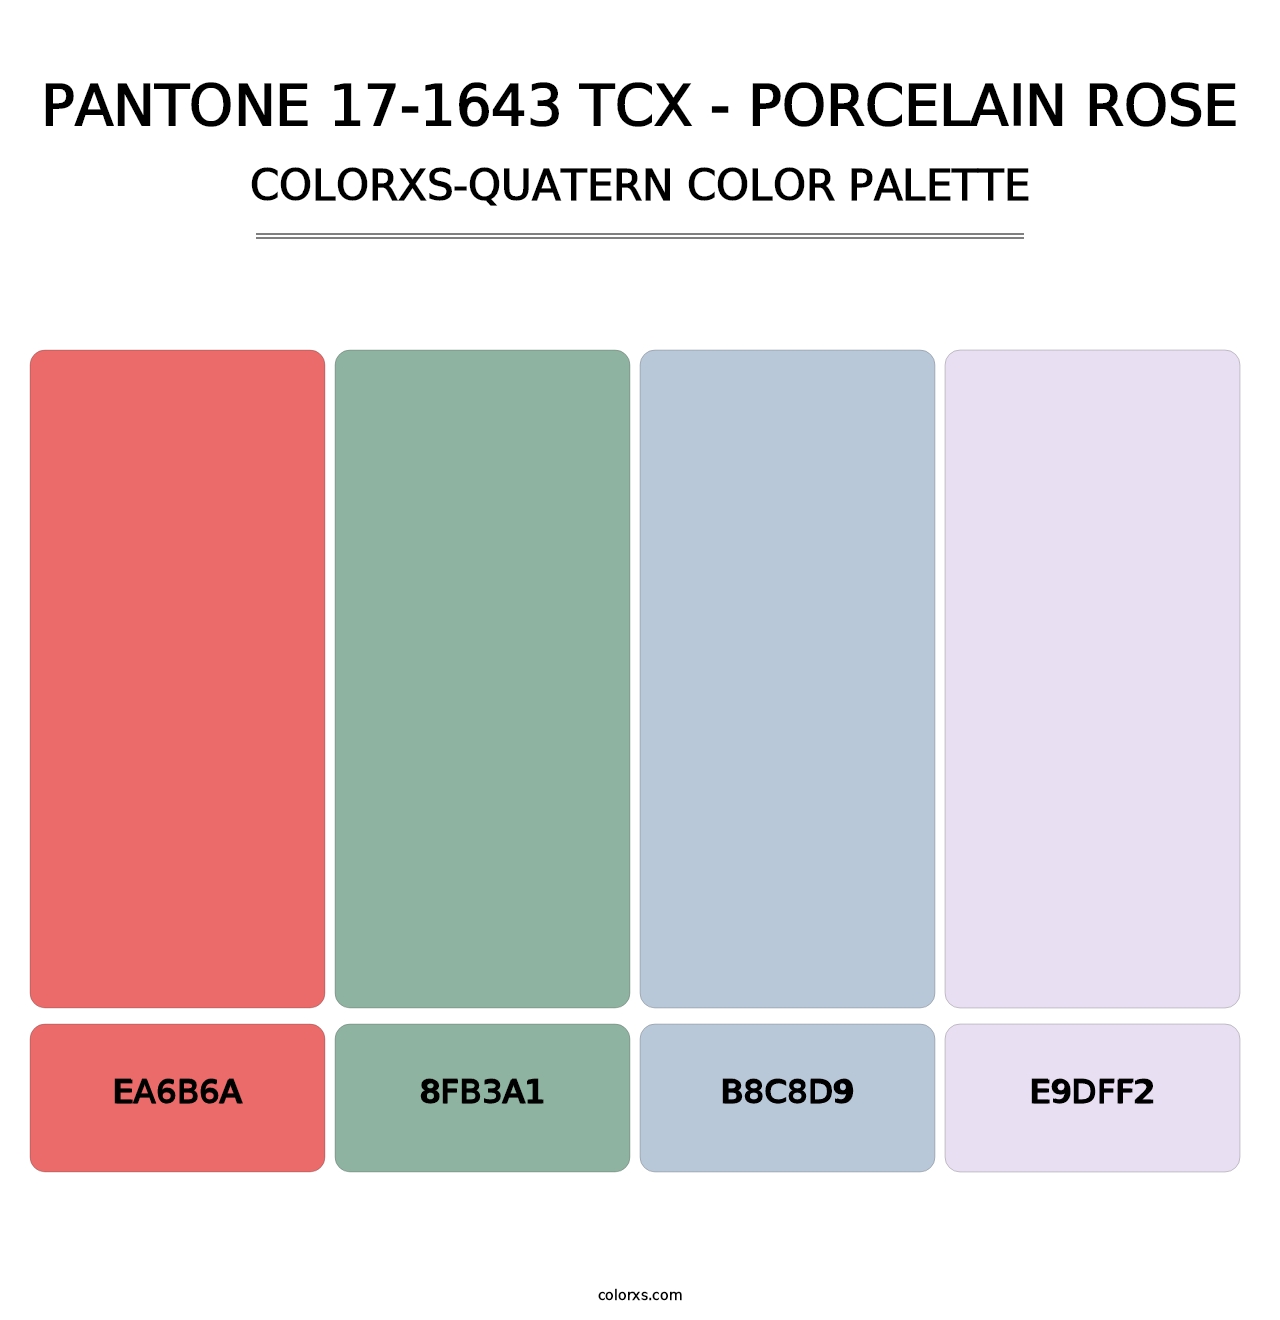 PANTONE 17-1643 TCX - Porcelain Rose - Colorxs Quatern Palette